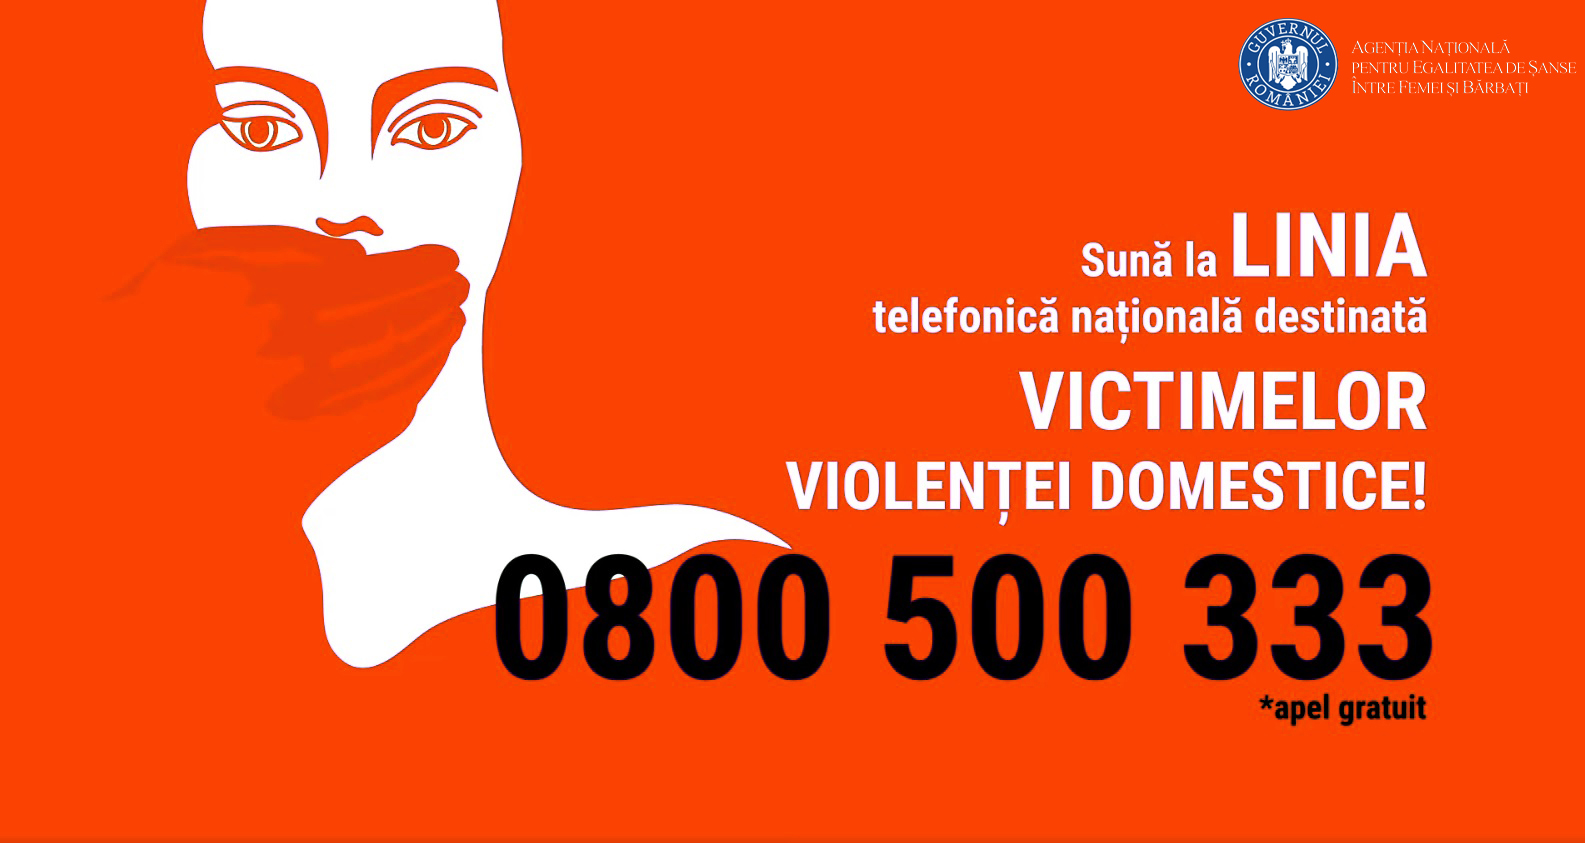 La nivel național, în primele 11 luni ale 2023, numărul faptelor penale în domeniul violenței domestice a crescut cu 4,82%, față de primele 11 luni ale anului 2022, de la 50.531 la 52.969 de fapte.